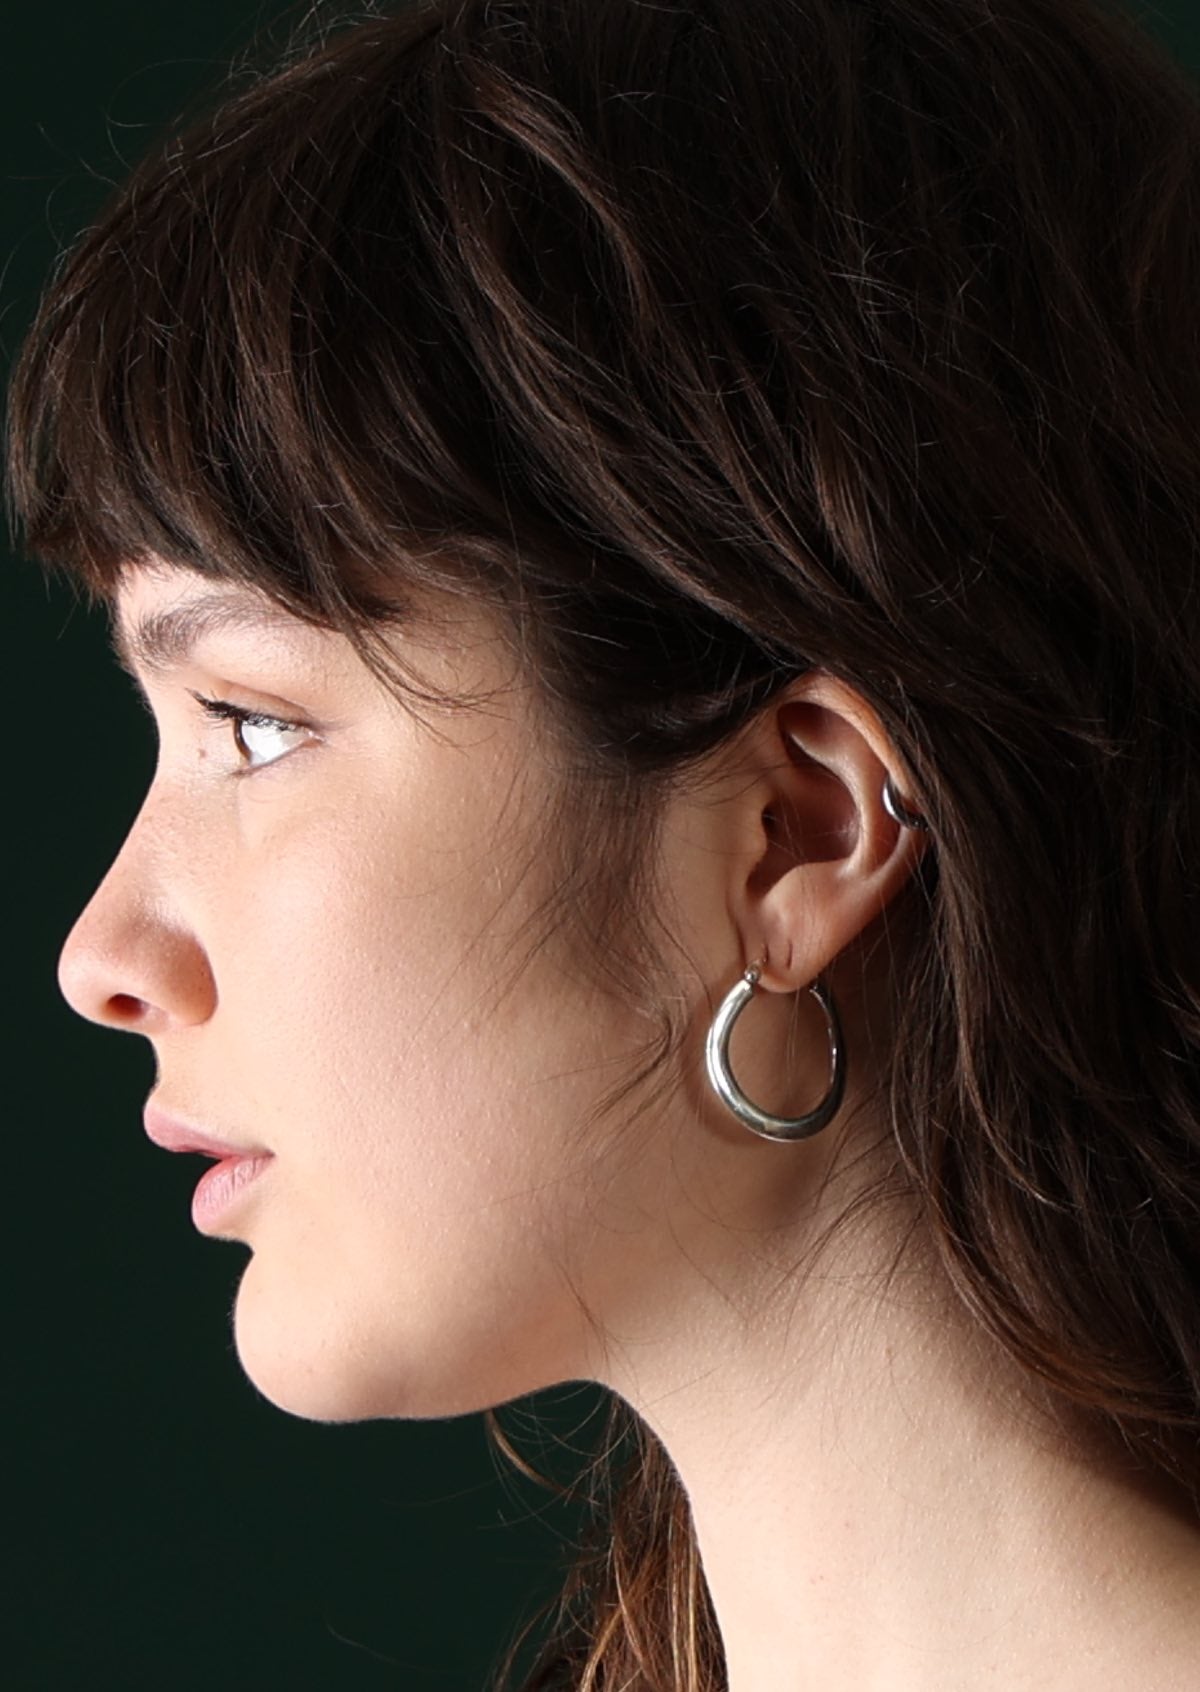 Model wearing large silver hoop earring